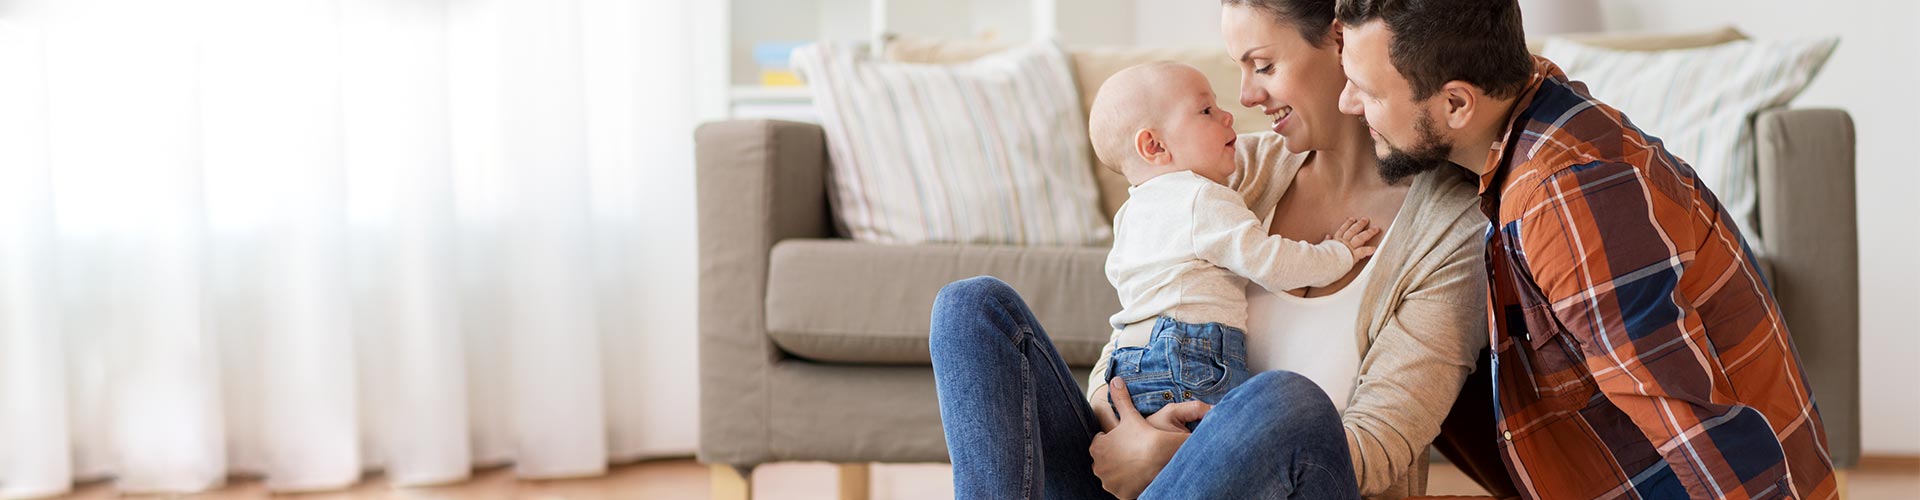 Seguros para Particulares - Familia con bebe sentados en el suelo del salon de su casa jugando